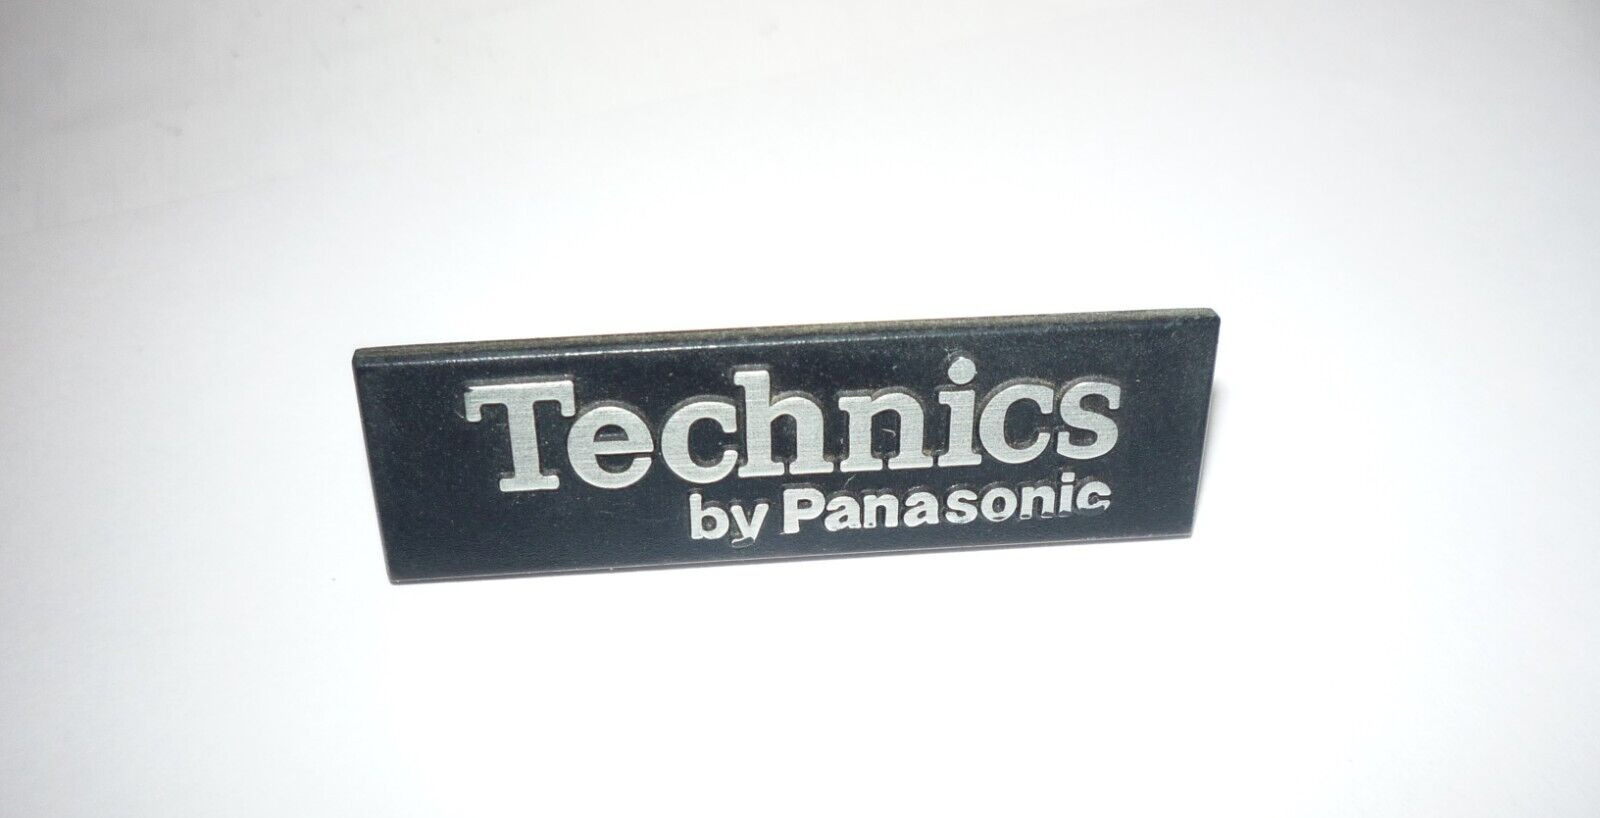 Technics Turntable   SL-23  emblem name tag - NICE